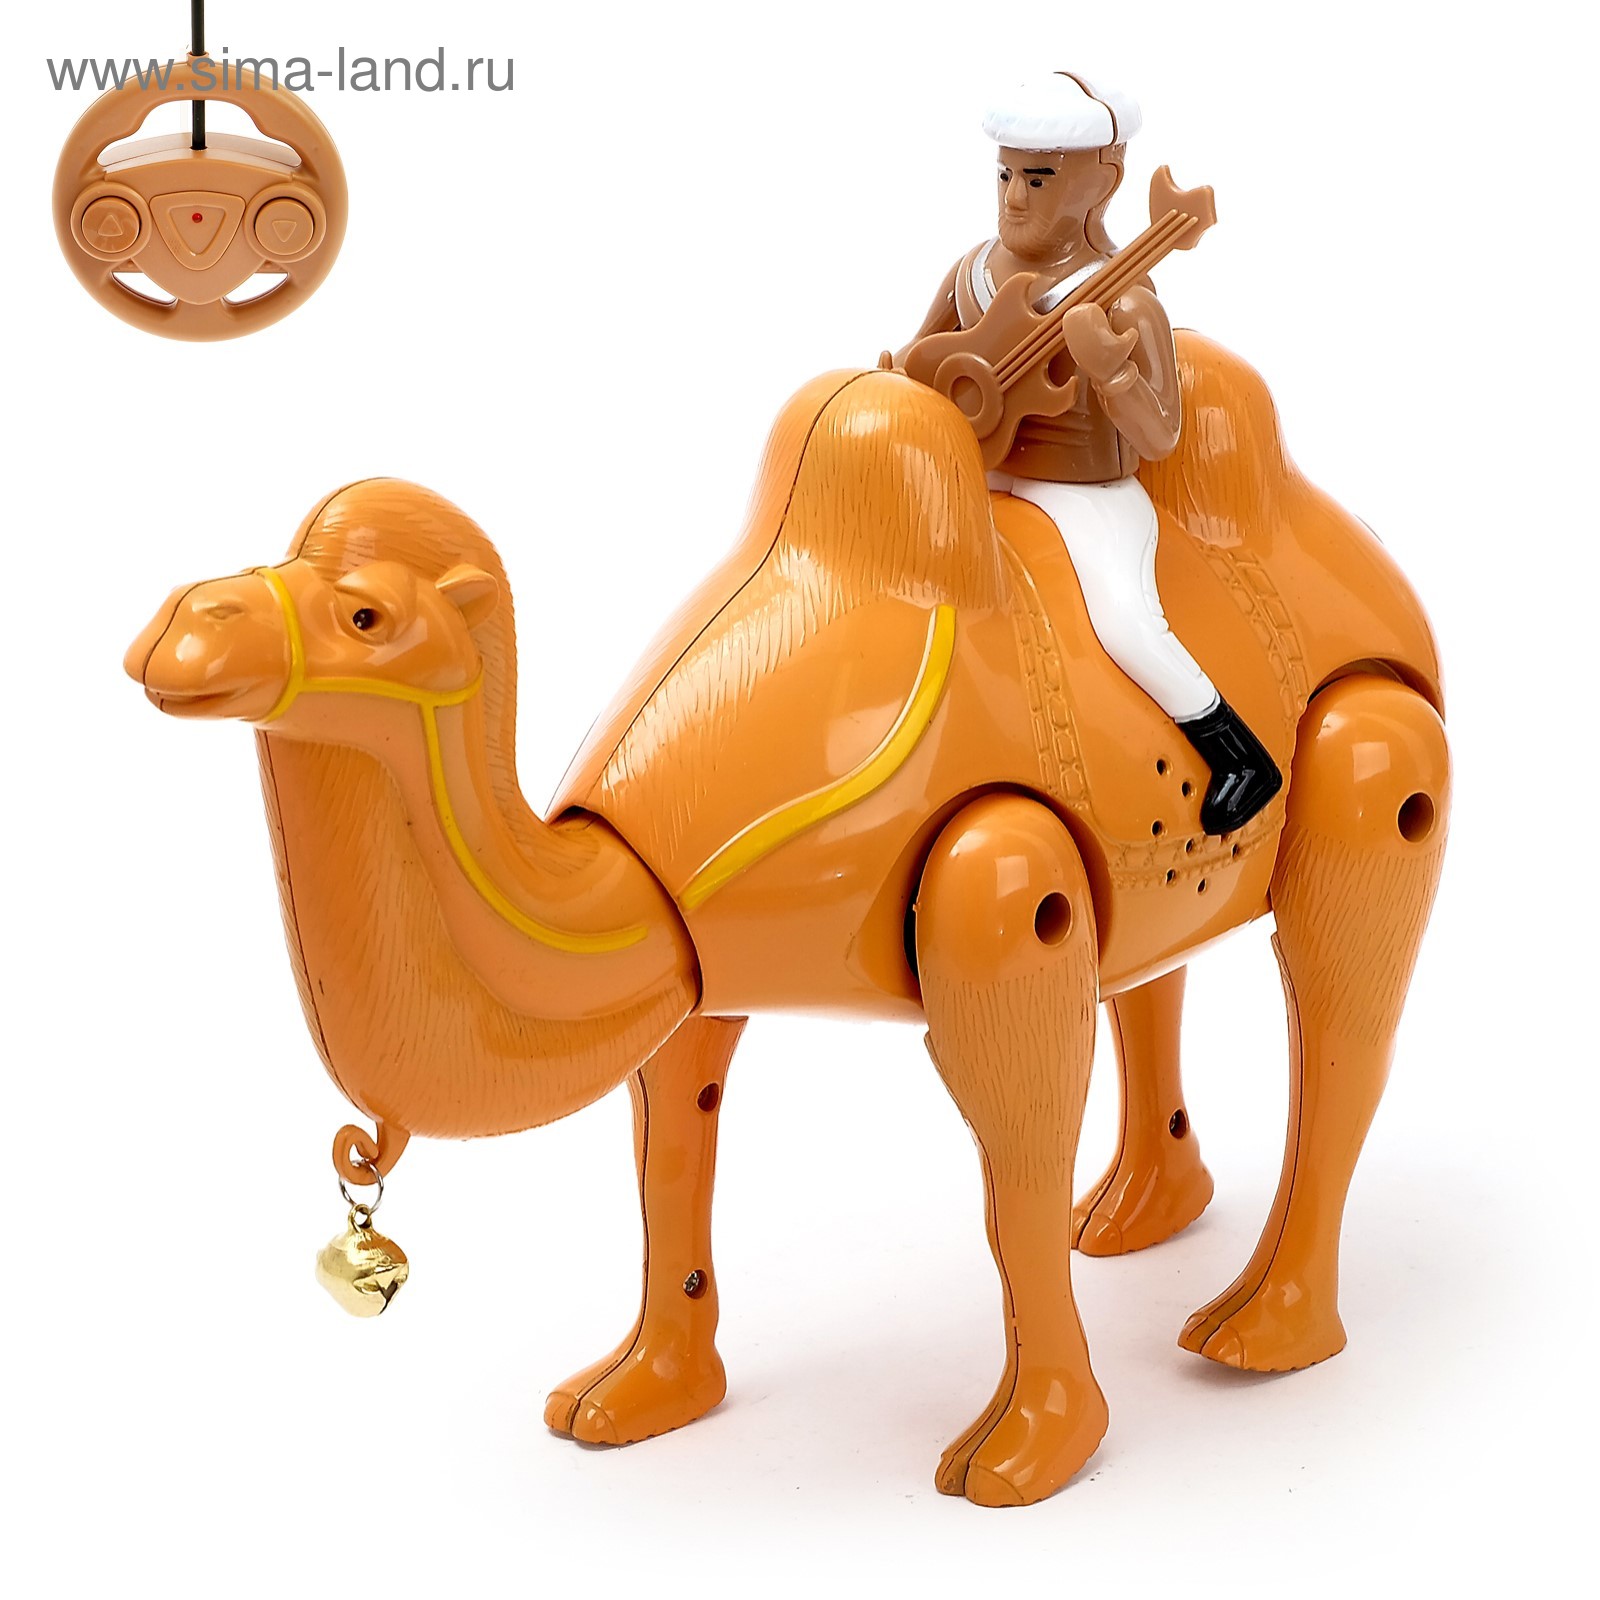 Верблюд радиоуправляемый «Король пустыни», работает от батареек, свет и звук  (2611573) - Купить по цене от 570.00 руб. | Интернет магазин SIMA-LAND.RU